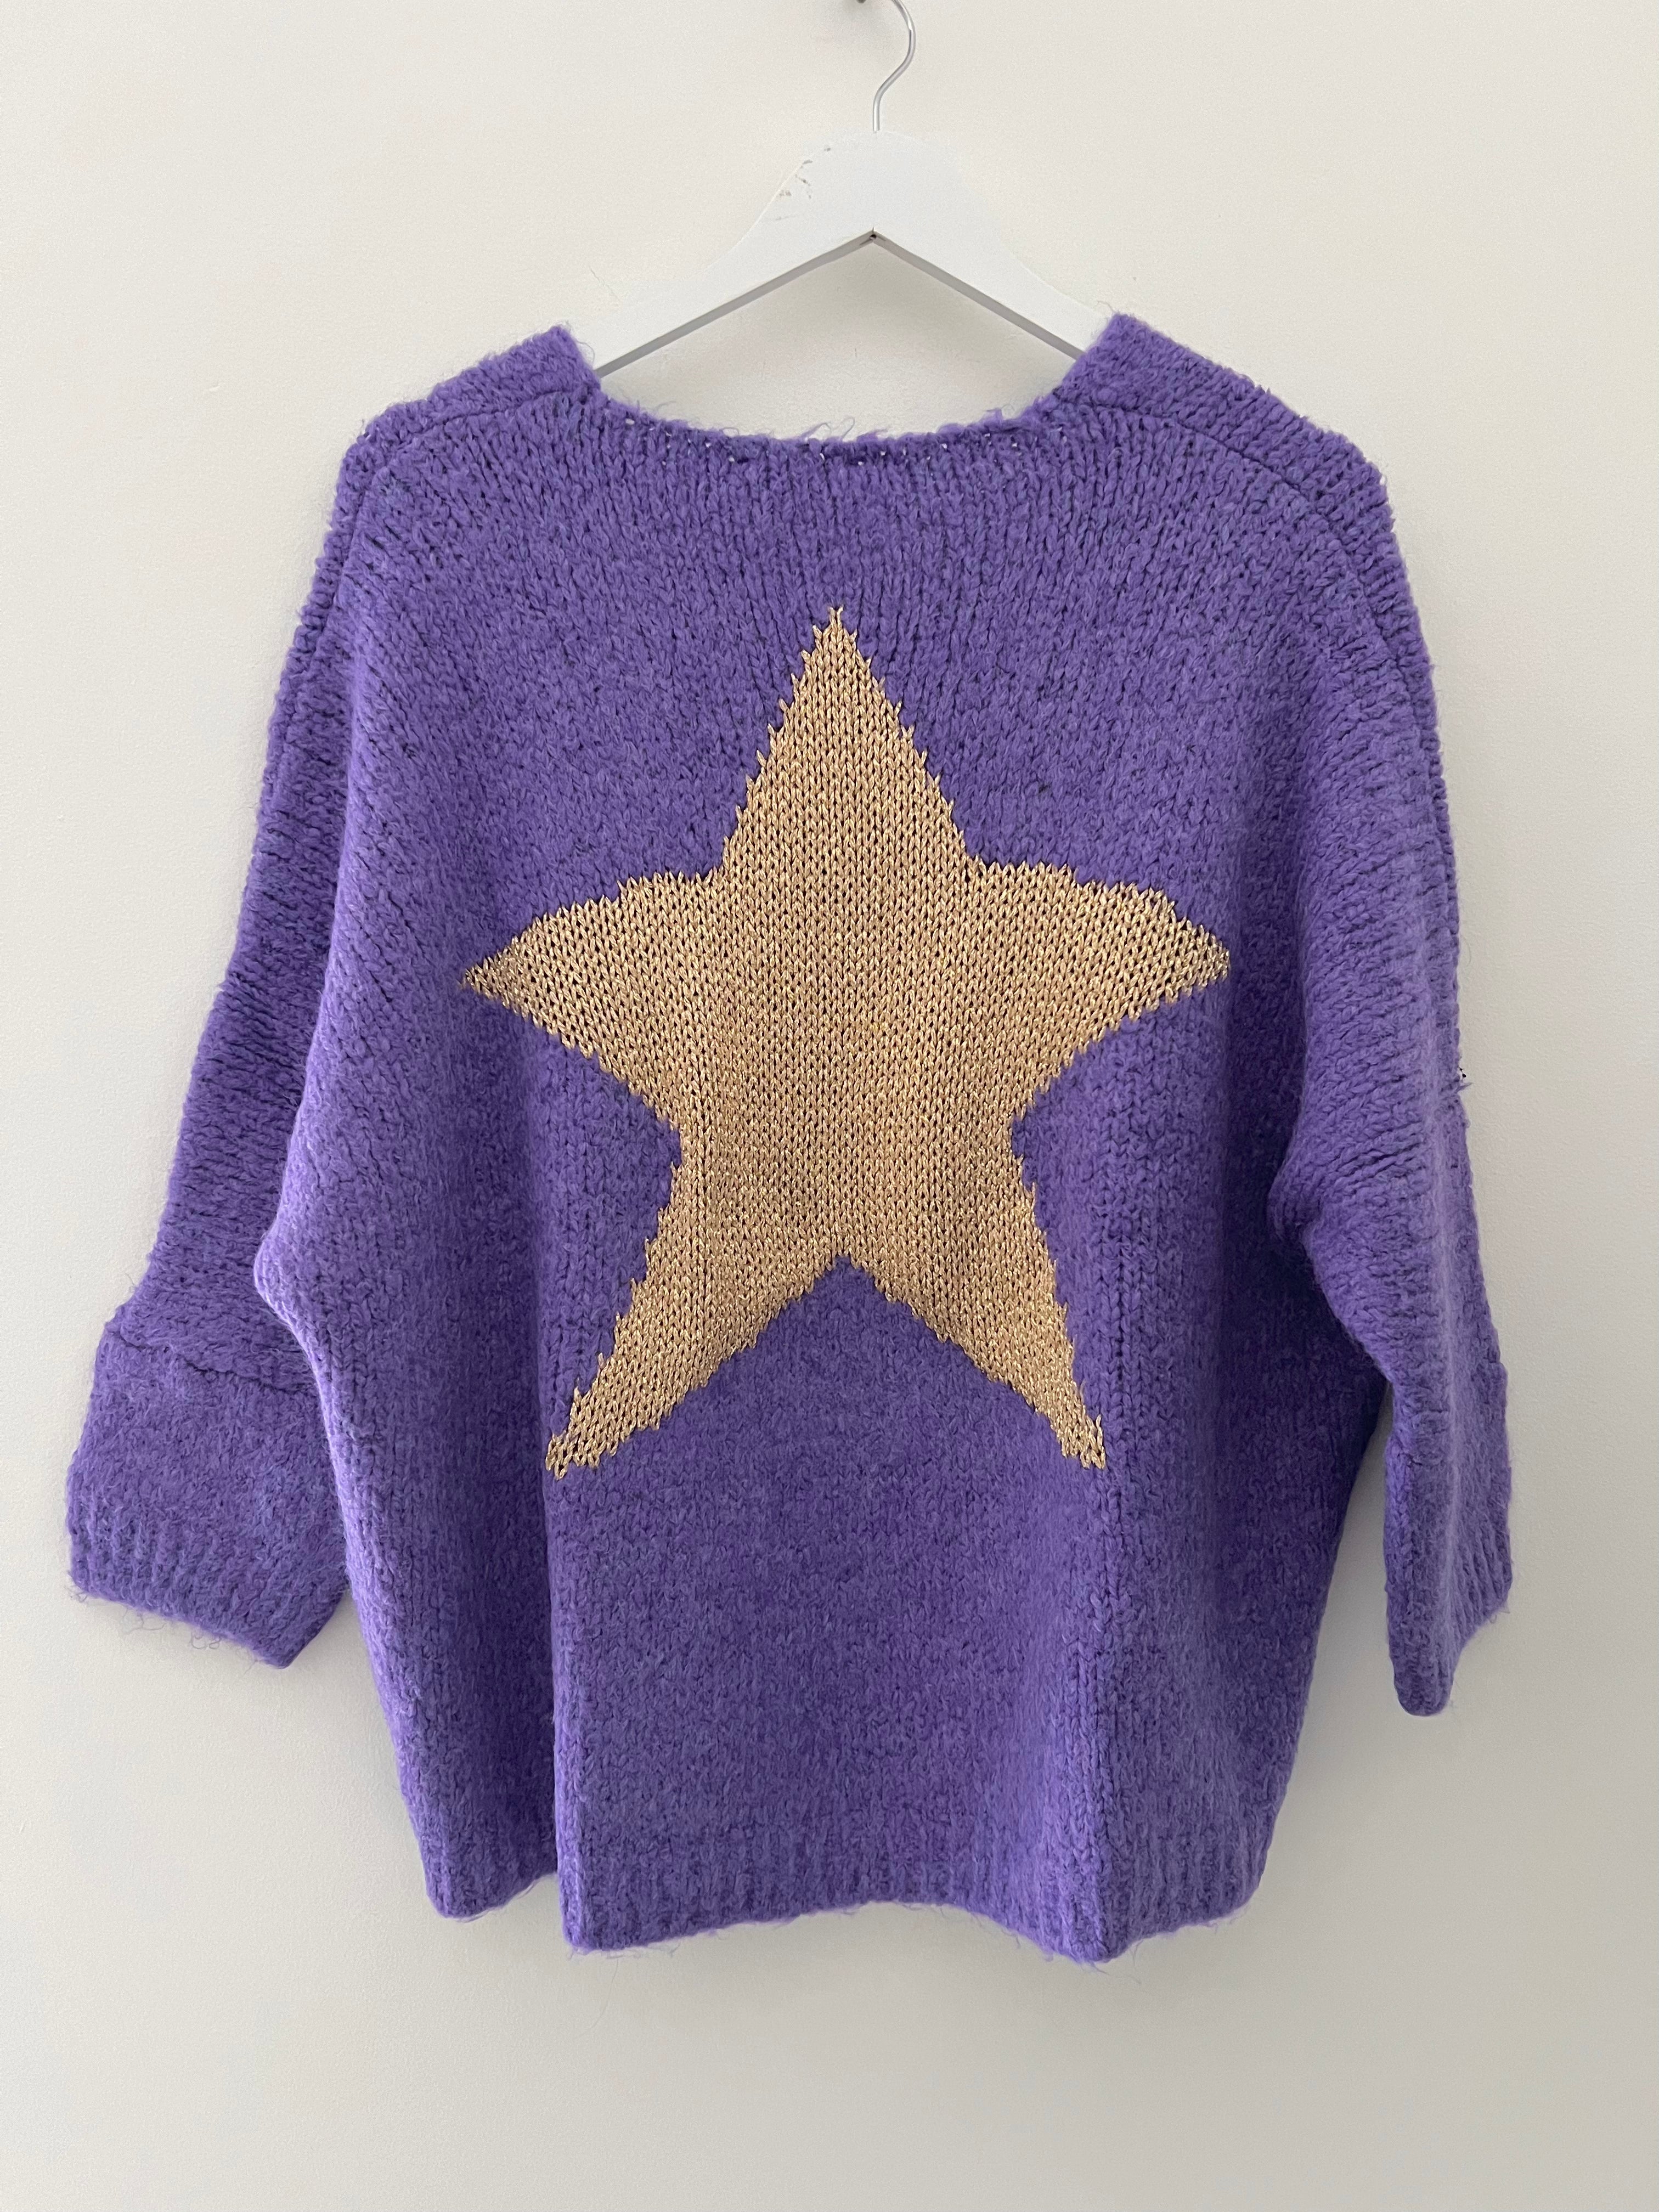 Cosy Star Jumper in Purple & Gold